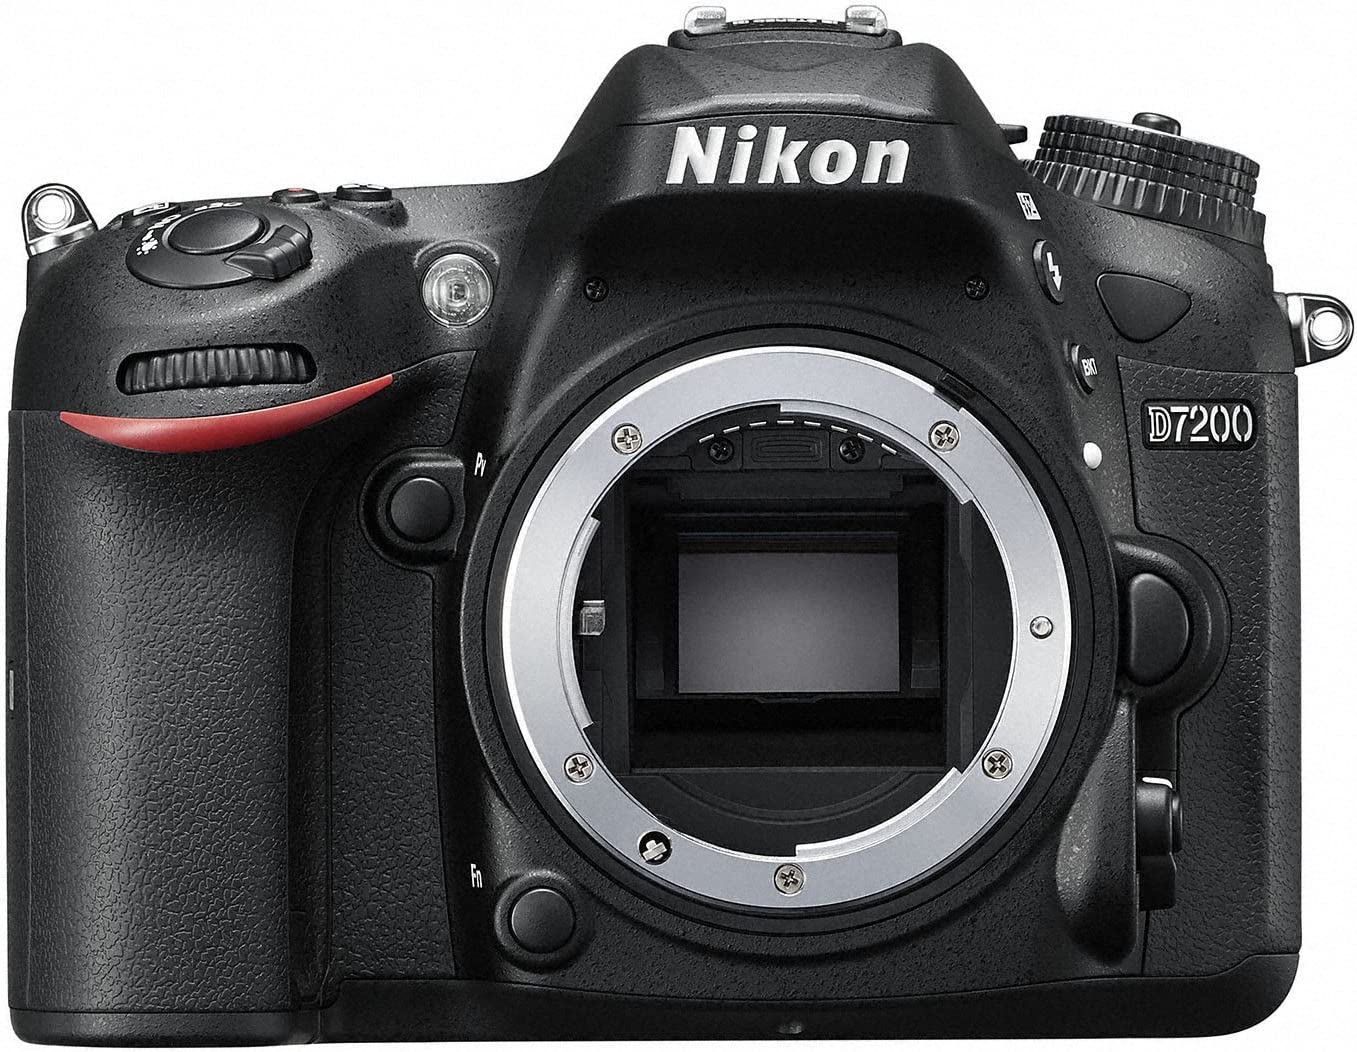 Nikon DSLR camera D7200 18-300VR lens kit D7200LK18-300 [International Version, No Warranty]